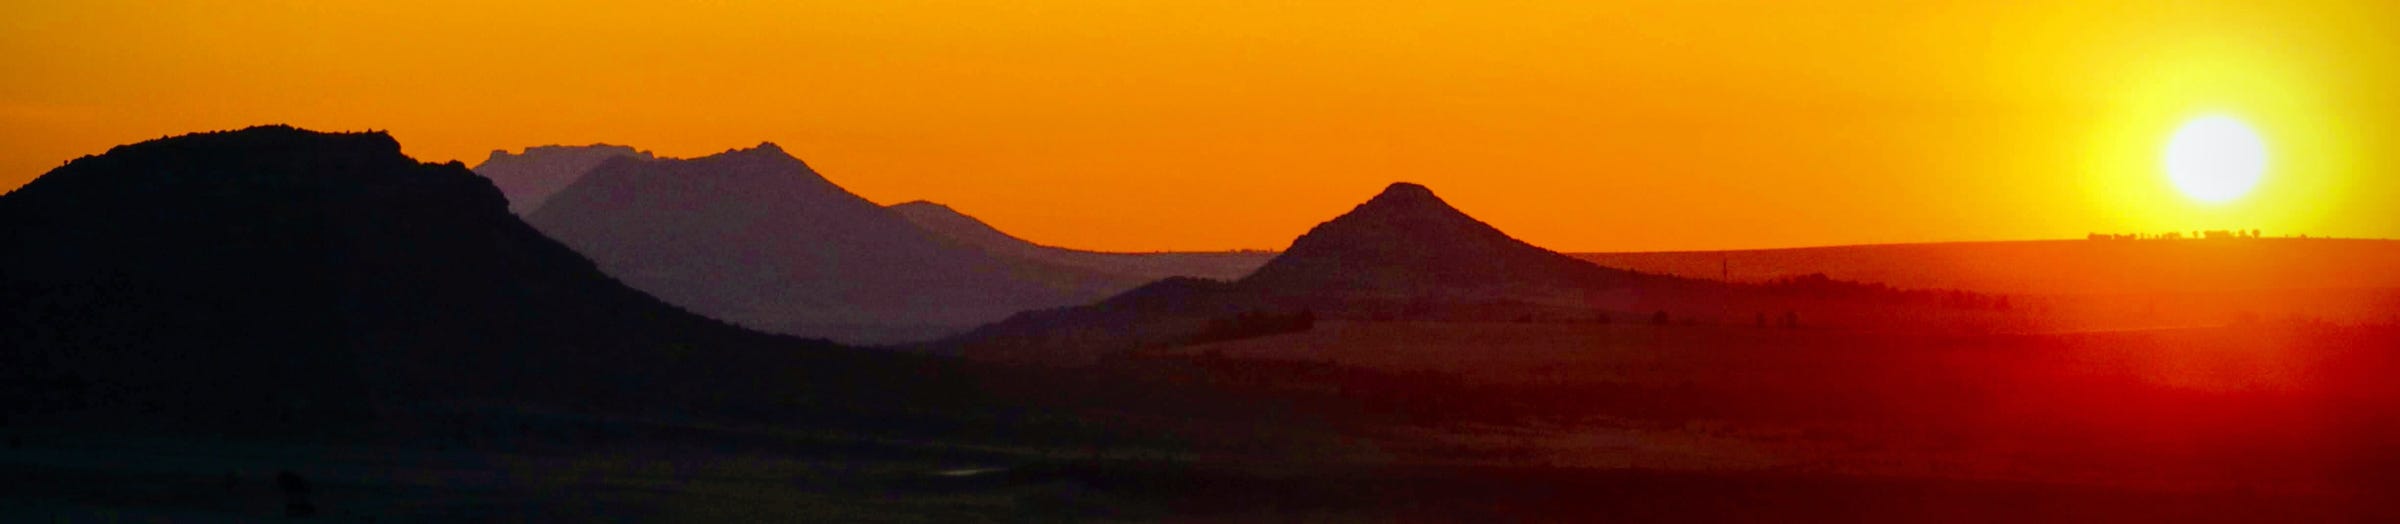 Sunset near Maseru, Lesotho.  Photo © copyright Stephen 